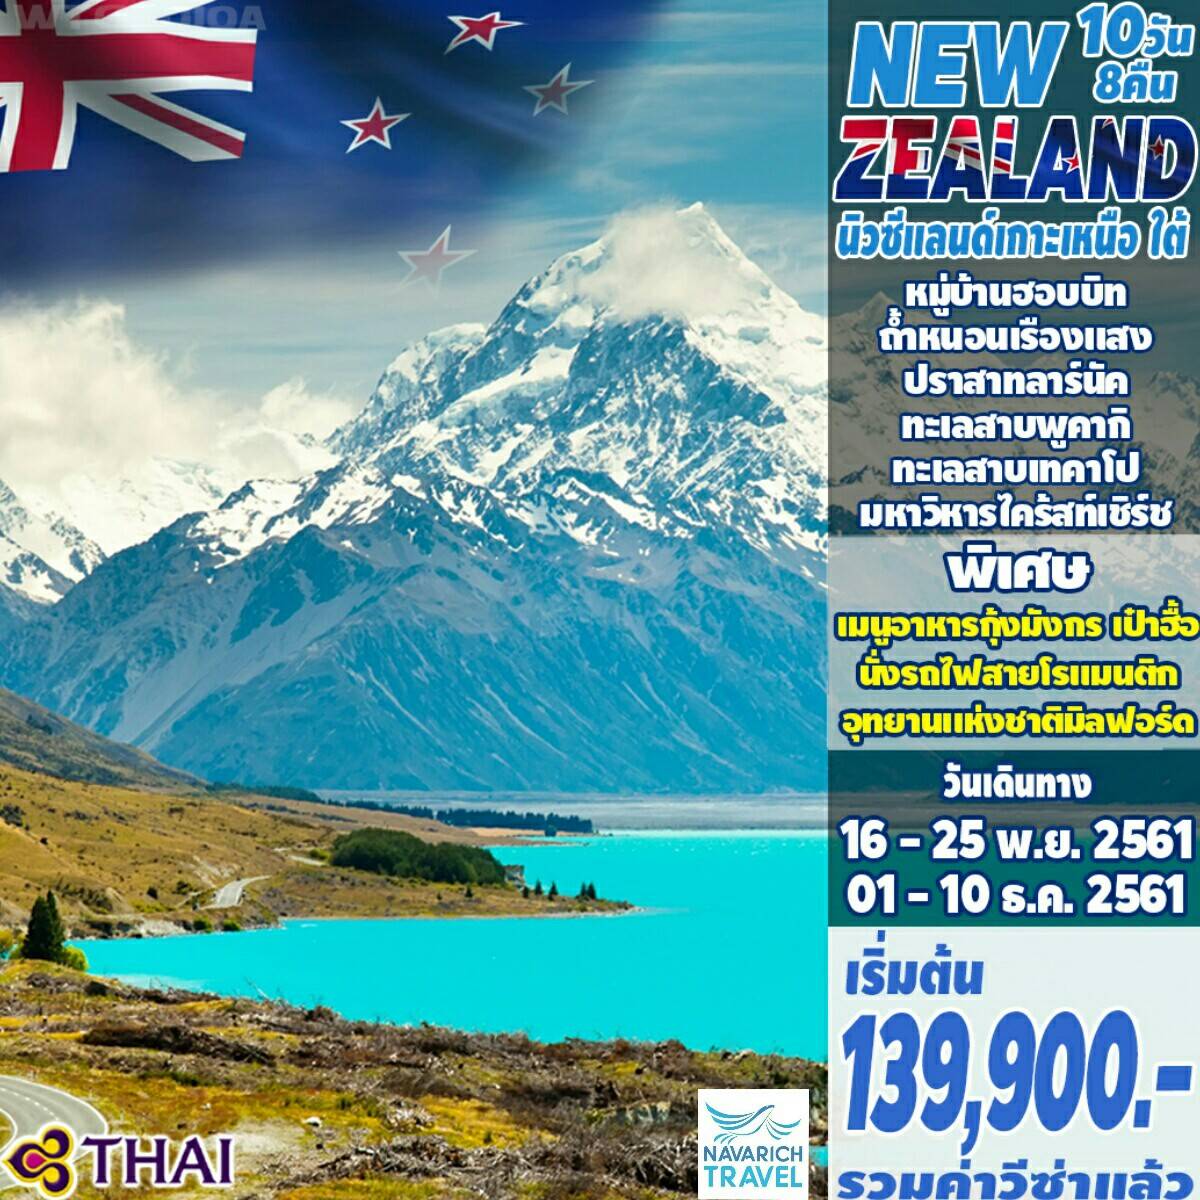 ทัวร์นิวซีแลนด์ เกาะเหนือ-ใต้ อ็อคแลนด์ โรโตรัว 10วัน TG 139900 พย-ธค61 รูปที่ 1